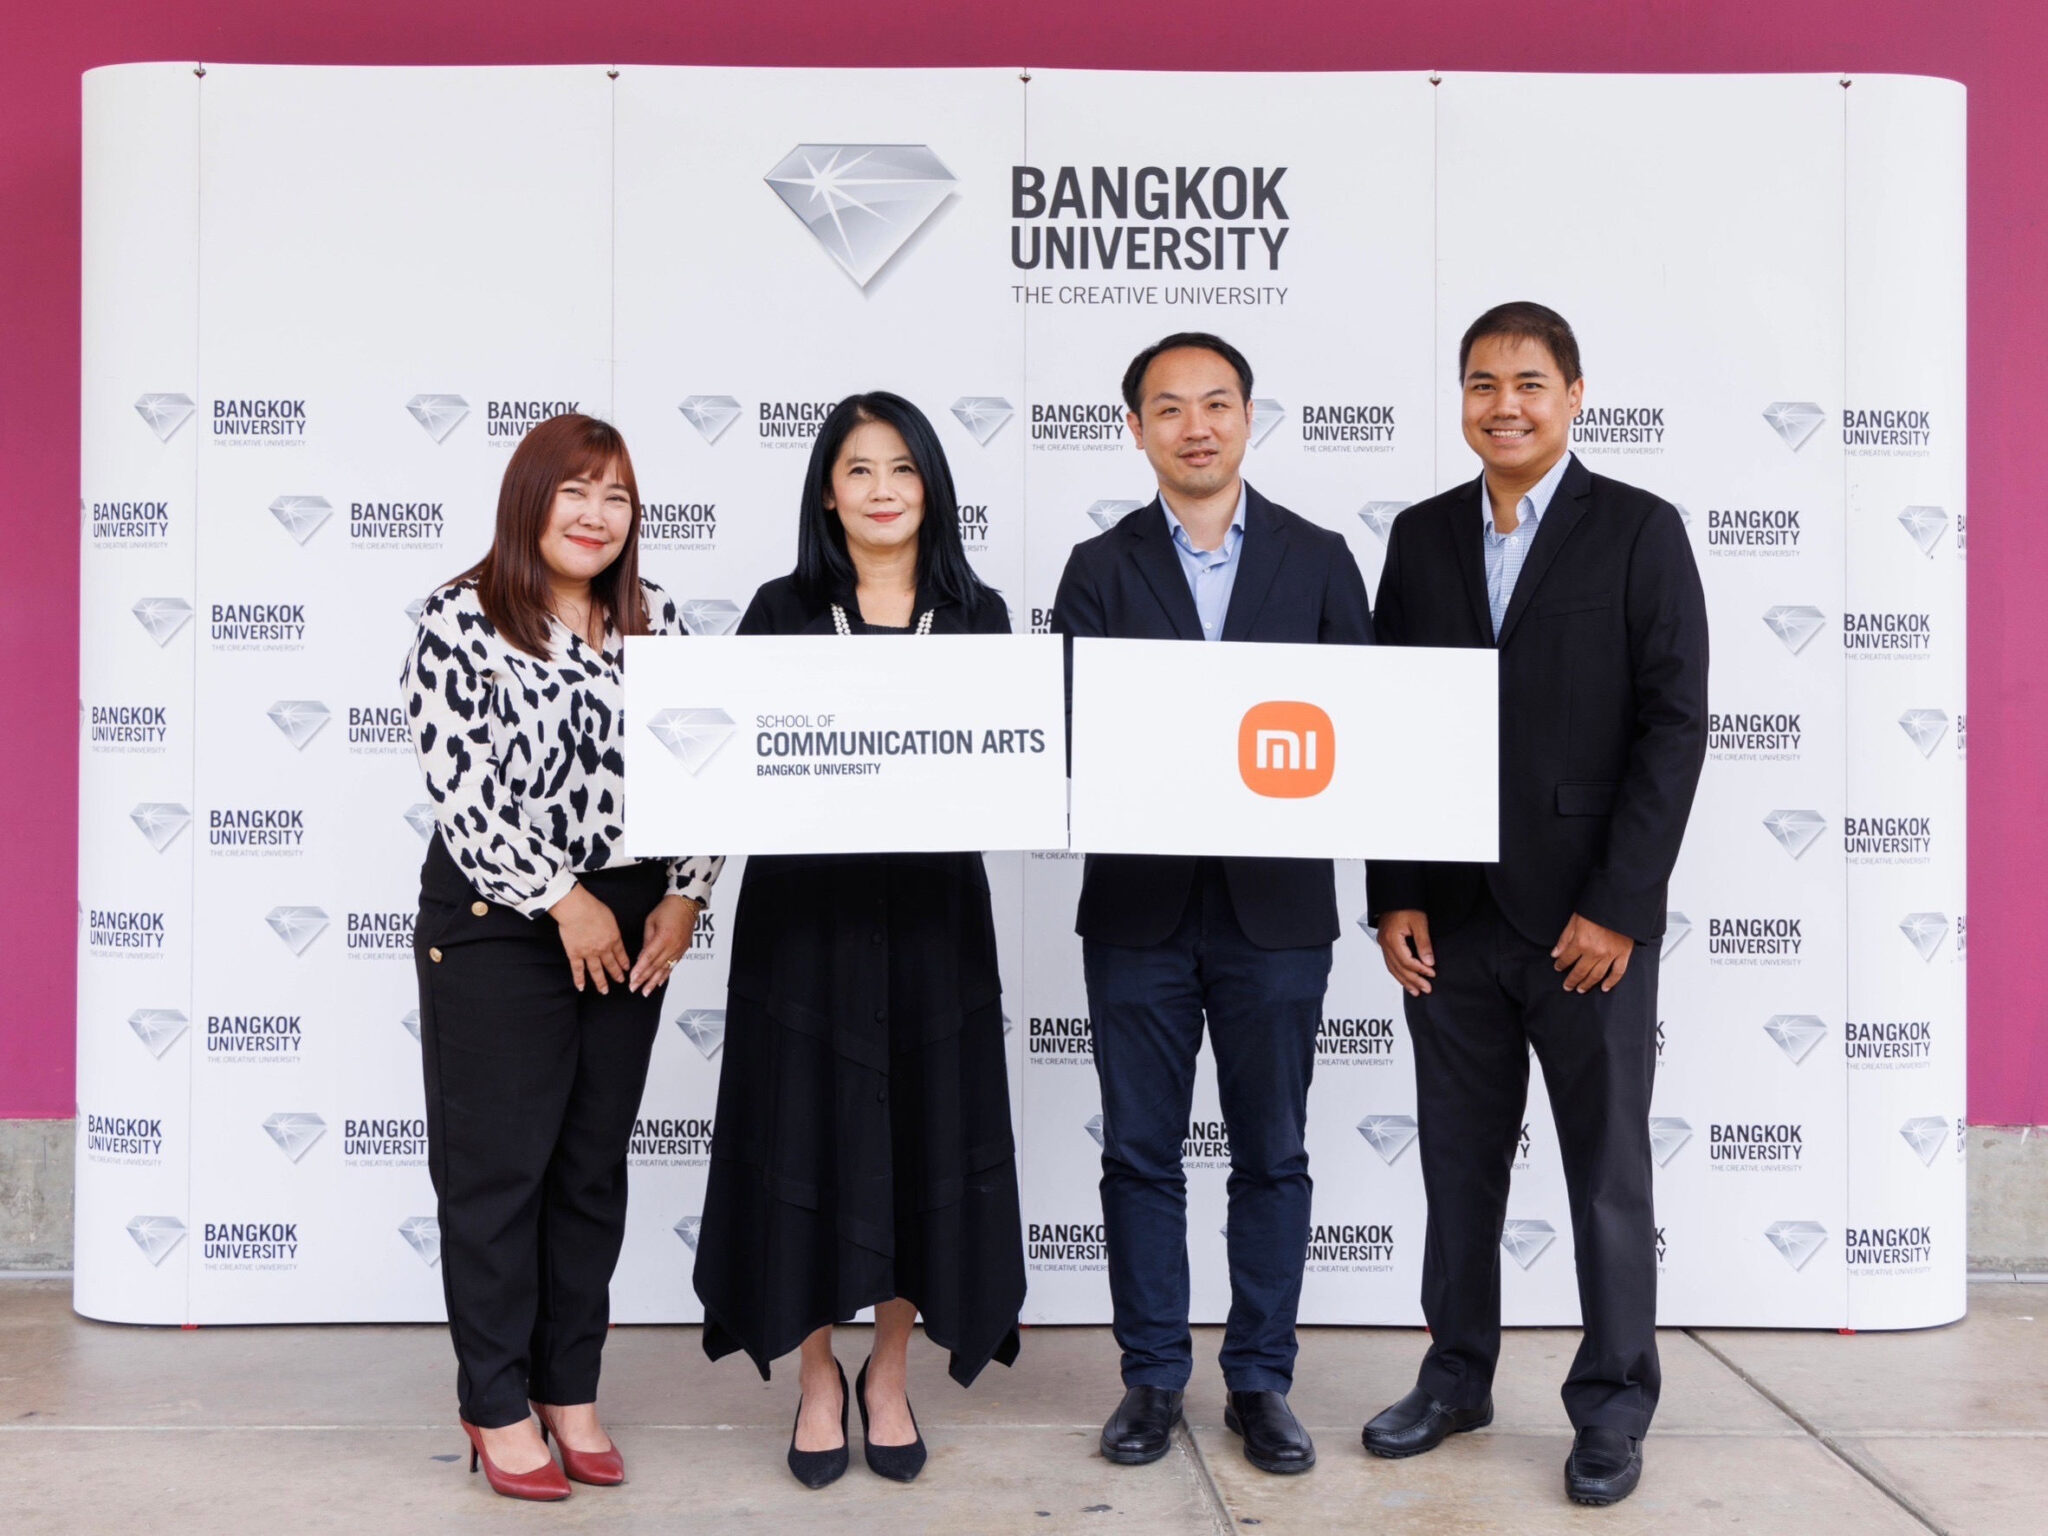 เสียวหมี่ ประเทศไทย จับมือ คณะนิเทศศาสตร์ มหาวิทยาลัยกรุงเทพ  จัดคลาสบรรยายให้ความรู้เทคนิคการถ่ายภาพเชิงสร้างสรรค์  พร้อมจัดการประกวดถ่ายภาพชิงรางวัลผ่านโครงการ “Xiaomi Imagery Award 2023”